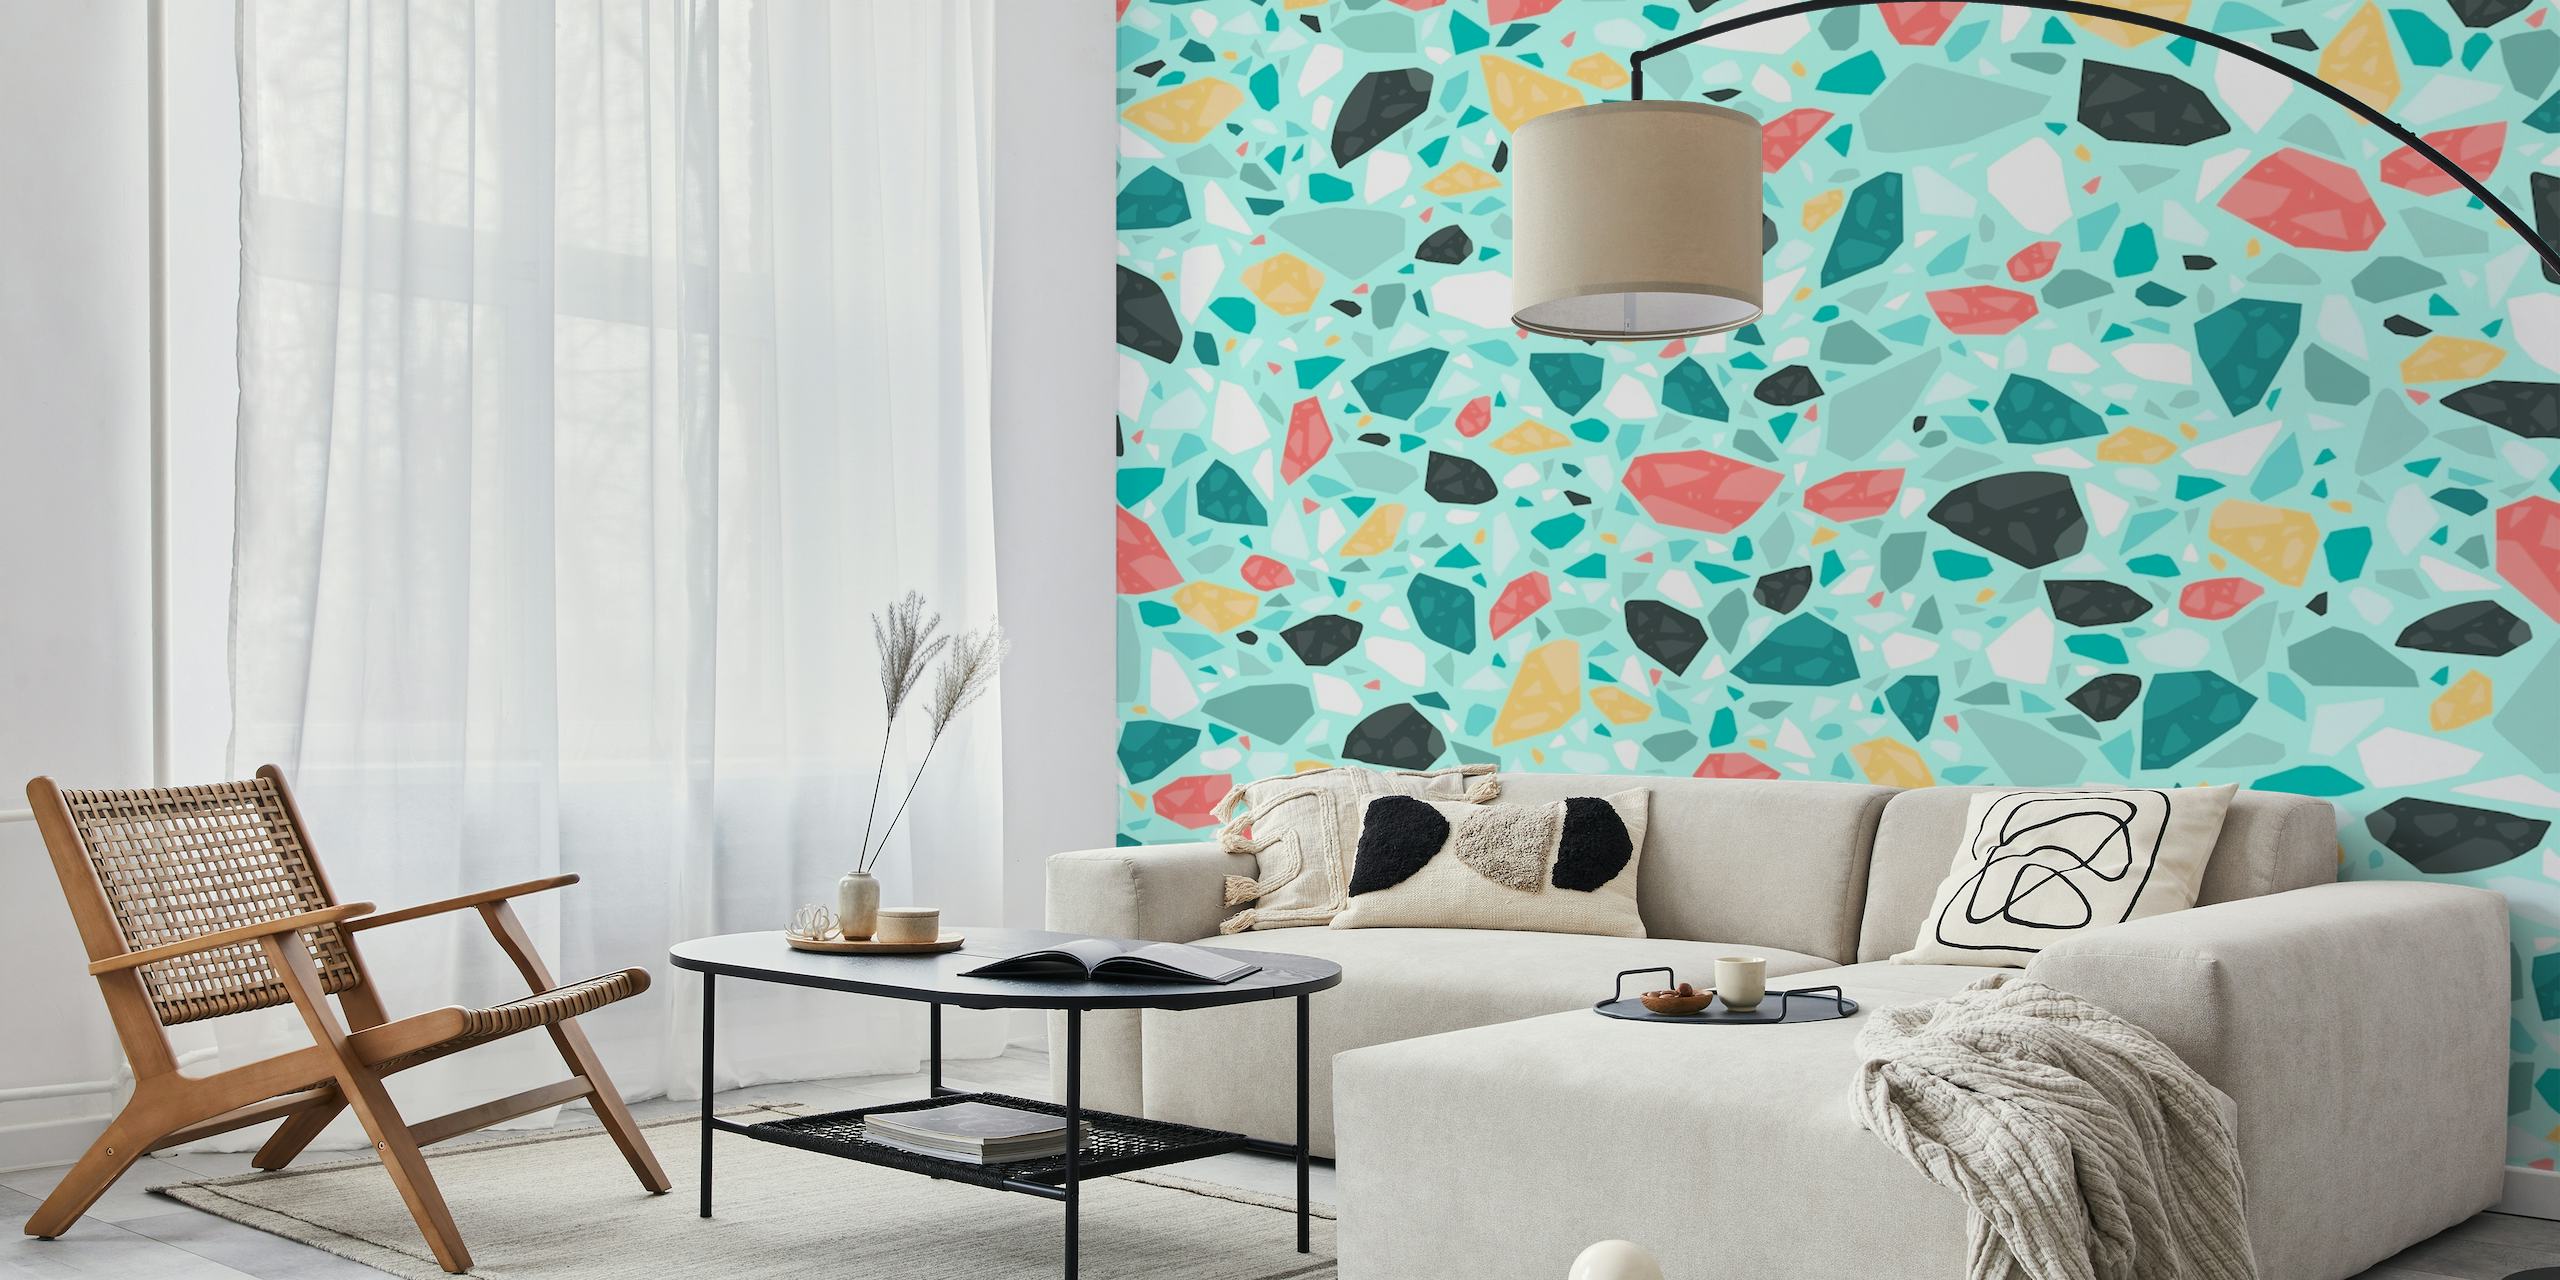 Mint Terrazzo Mozaïekpatroon muurschildering met een mix van koraal, zwart en pastelkleurige stukjes op een witte achtergrond